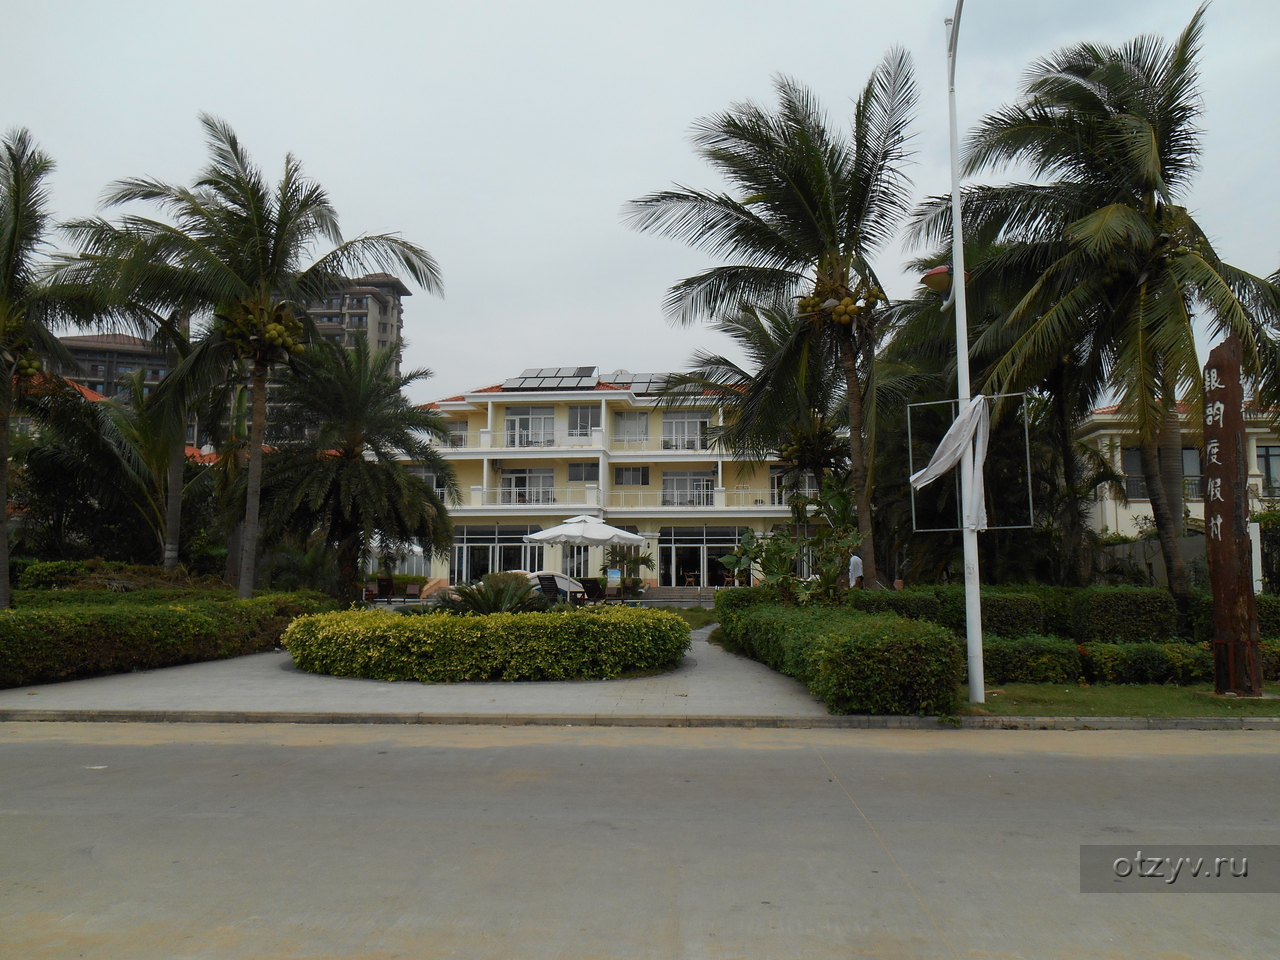 Yinyun Seaview Resort